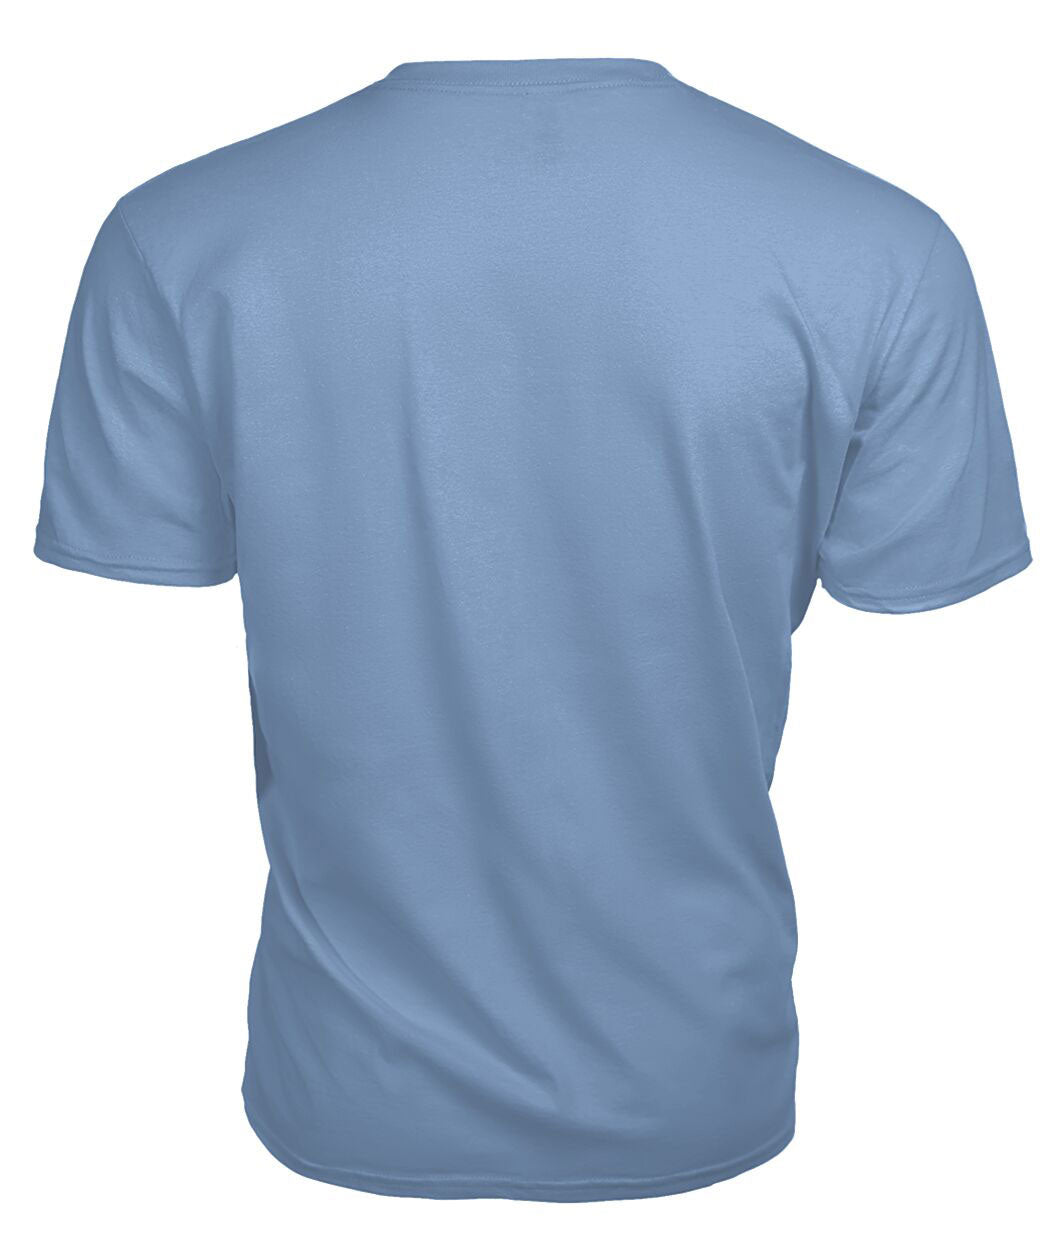 Baillie Modern Tartan Crest 2D T-shirt - Blood Runs Through My Veins Style